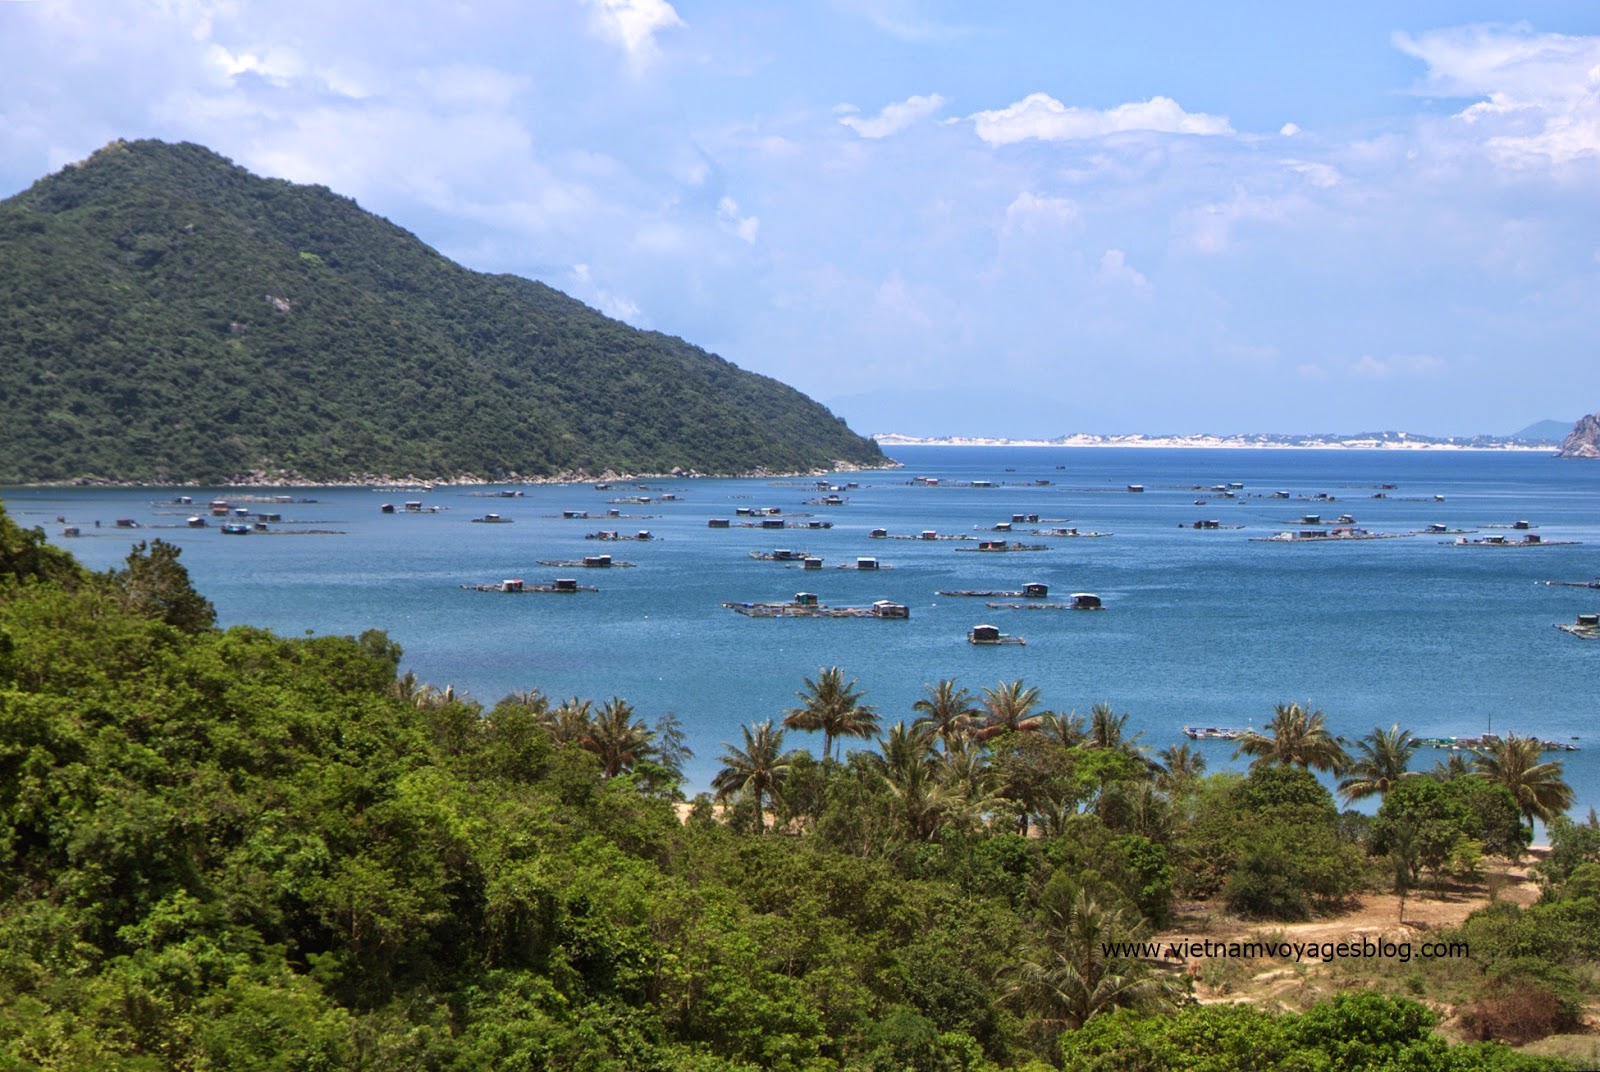 Nuôi cá bè ở Vịnh Vũng Rô, Phú Yên 2014